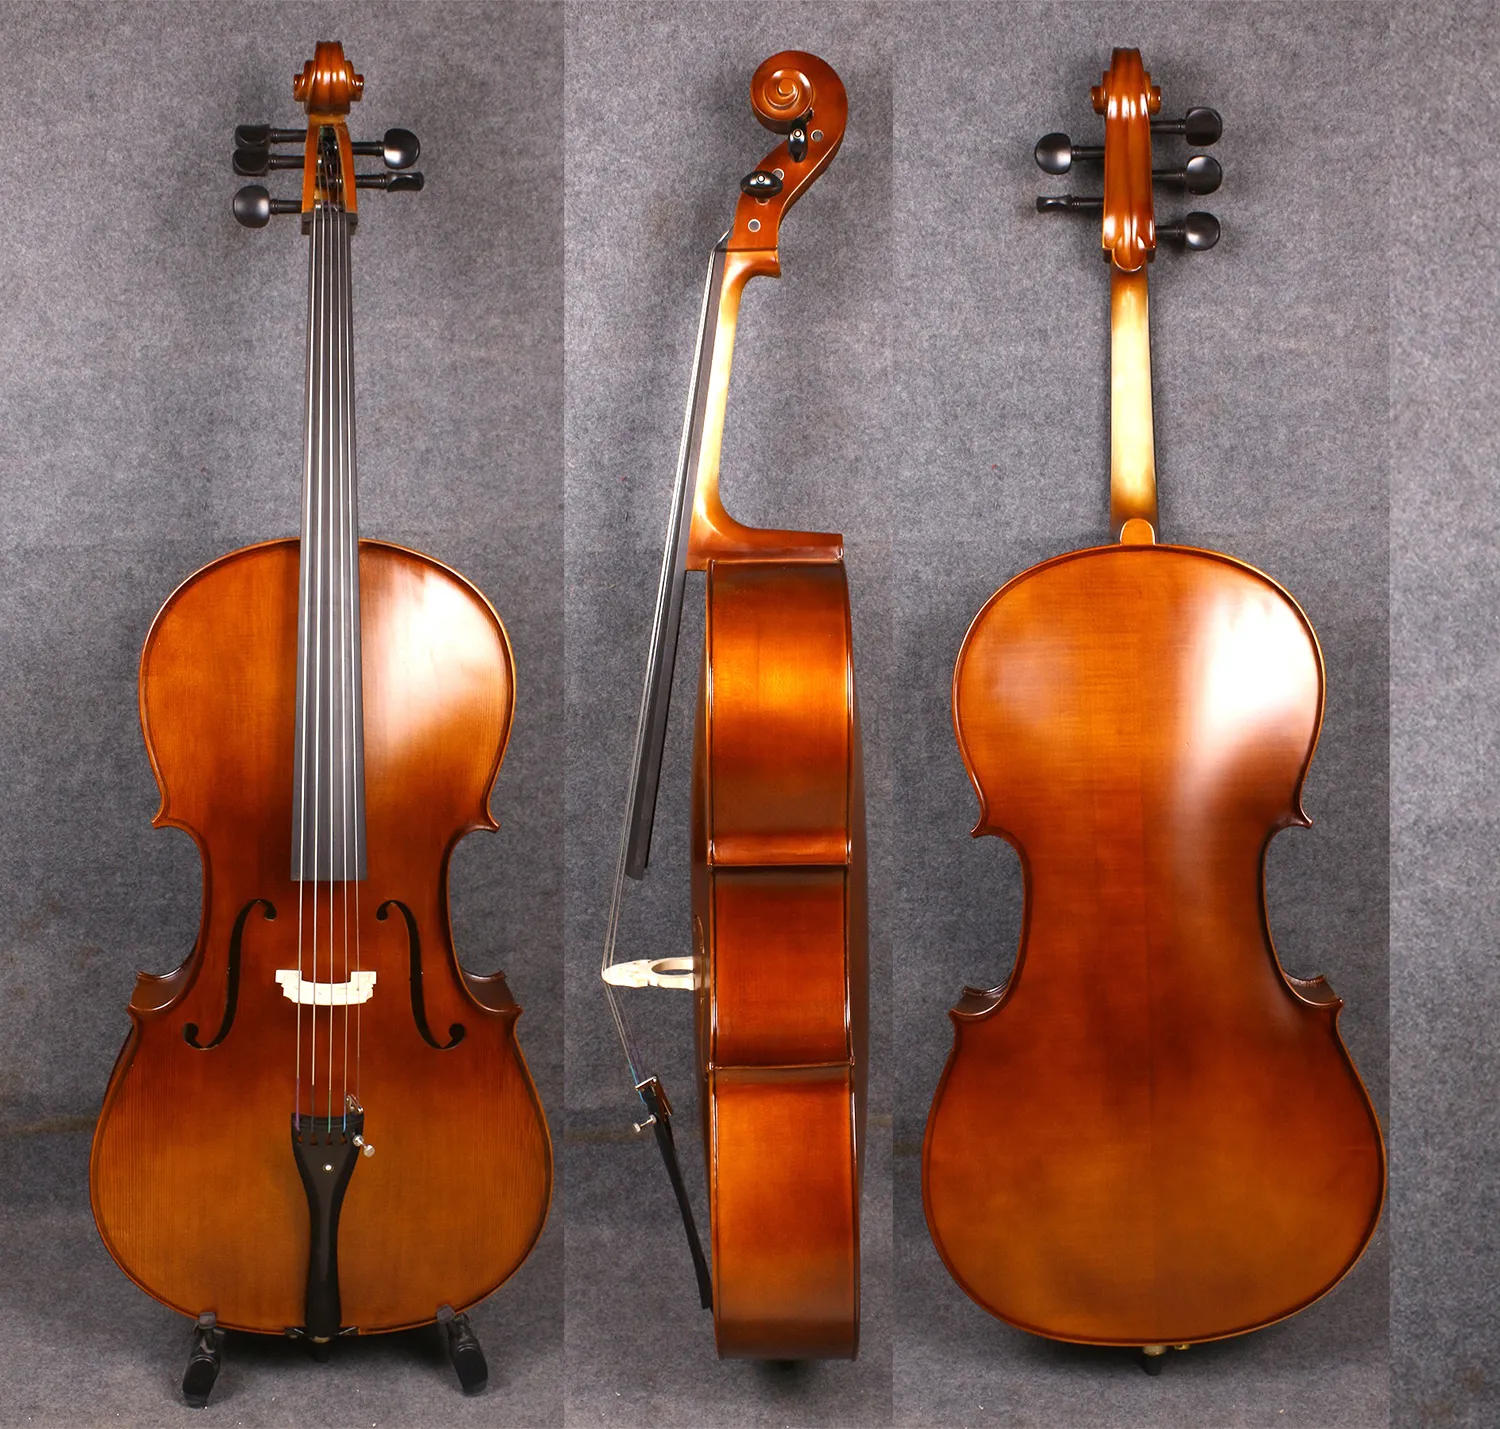 Yinfente 4/4 5 string Cello Full size Spruce خشب القيقب خشب الأبنوس التشيلو أجزاء حقيبة مجانية القوس يدوية